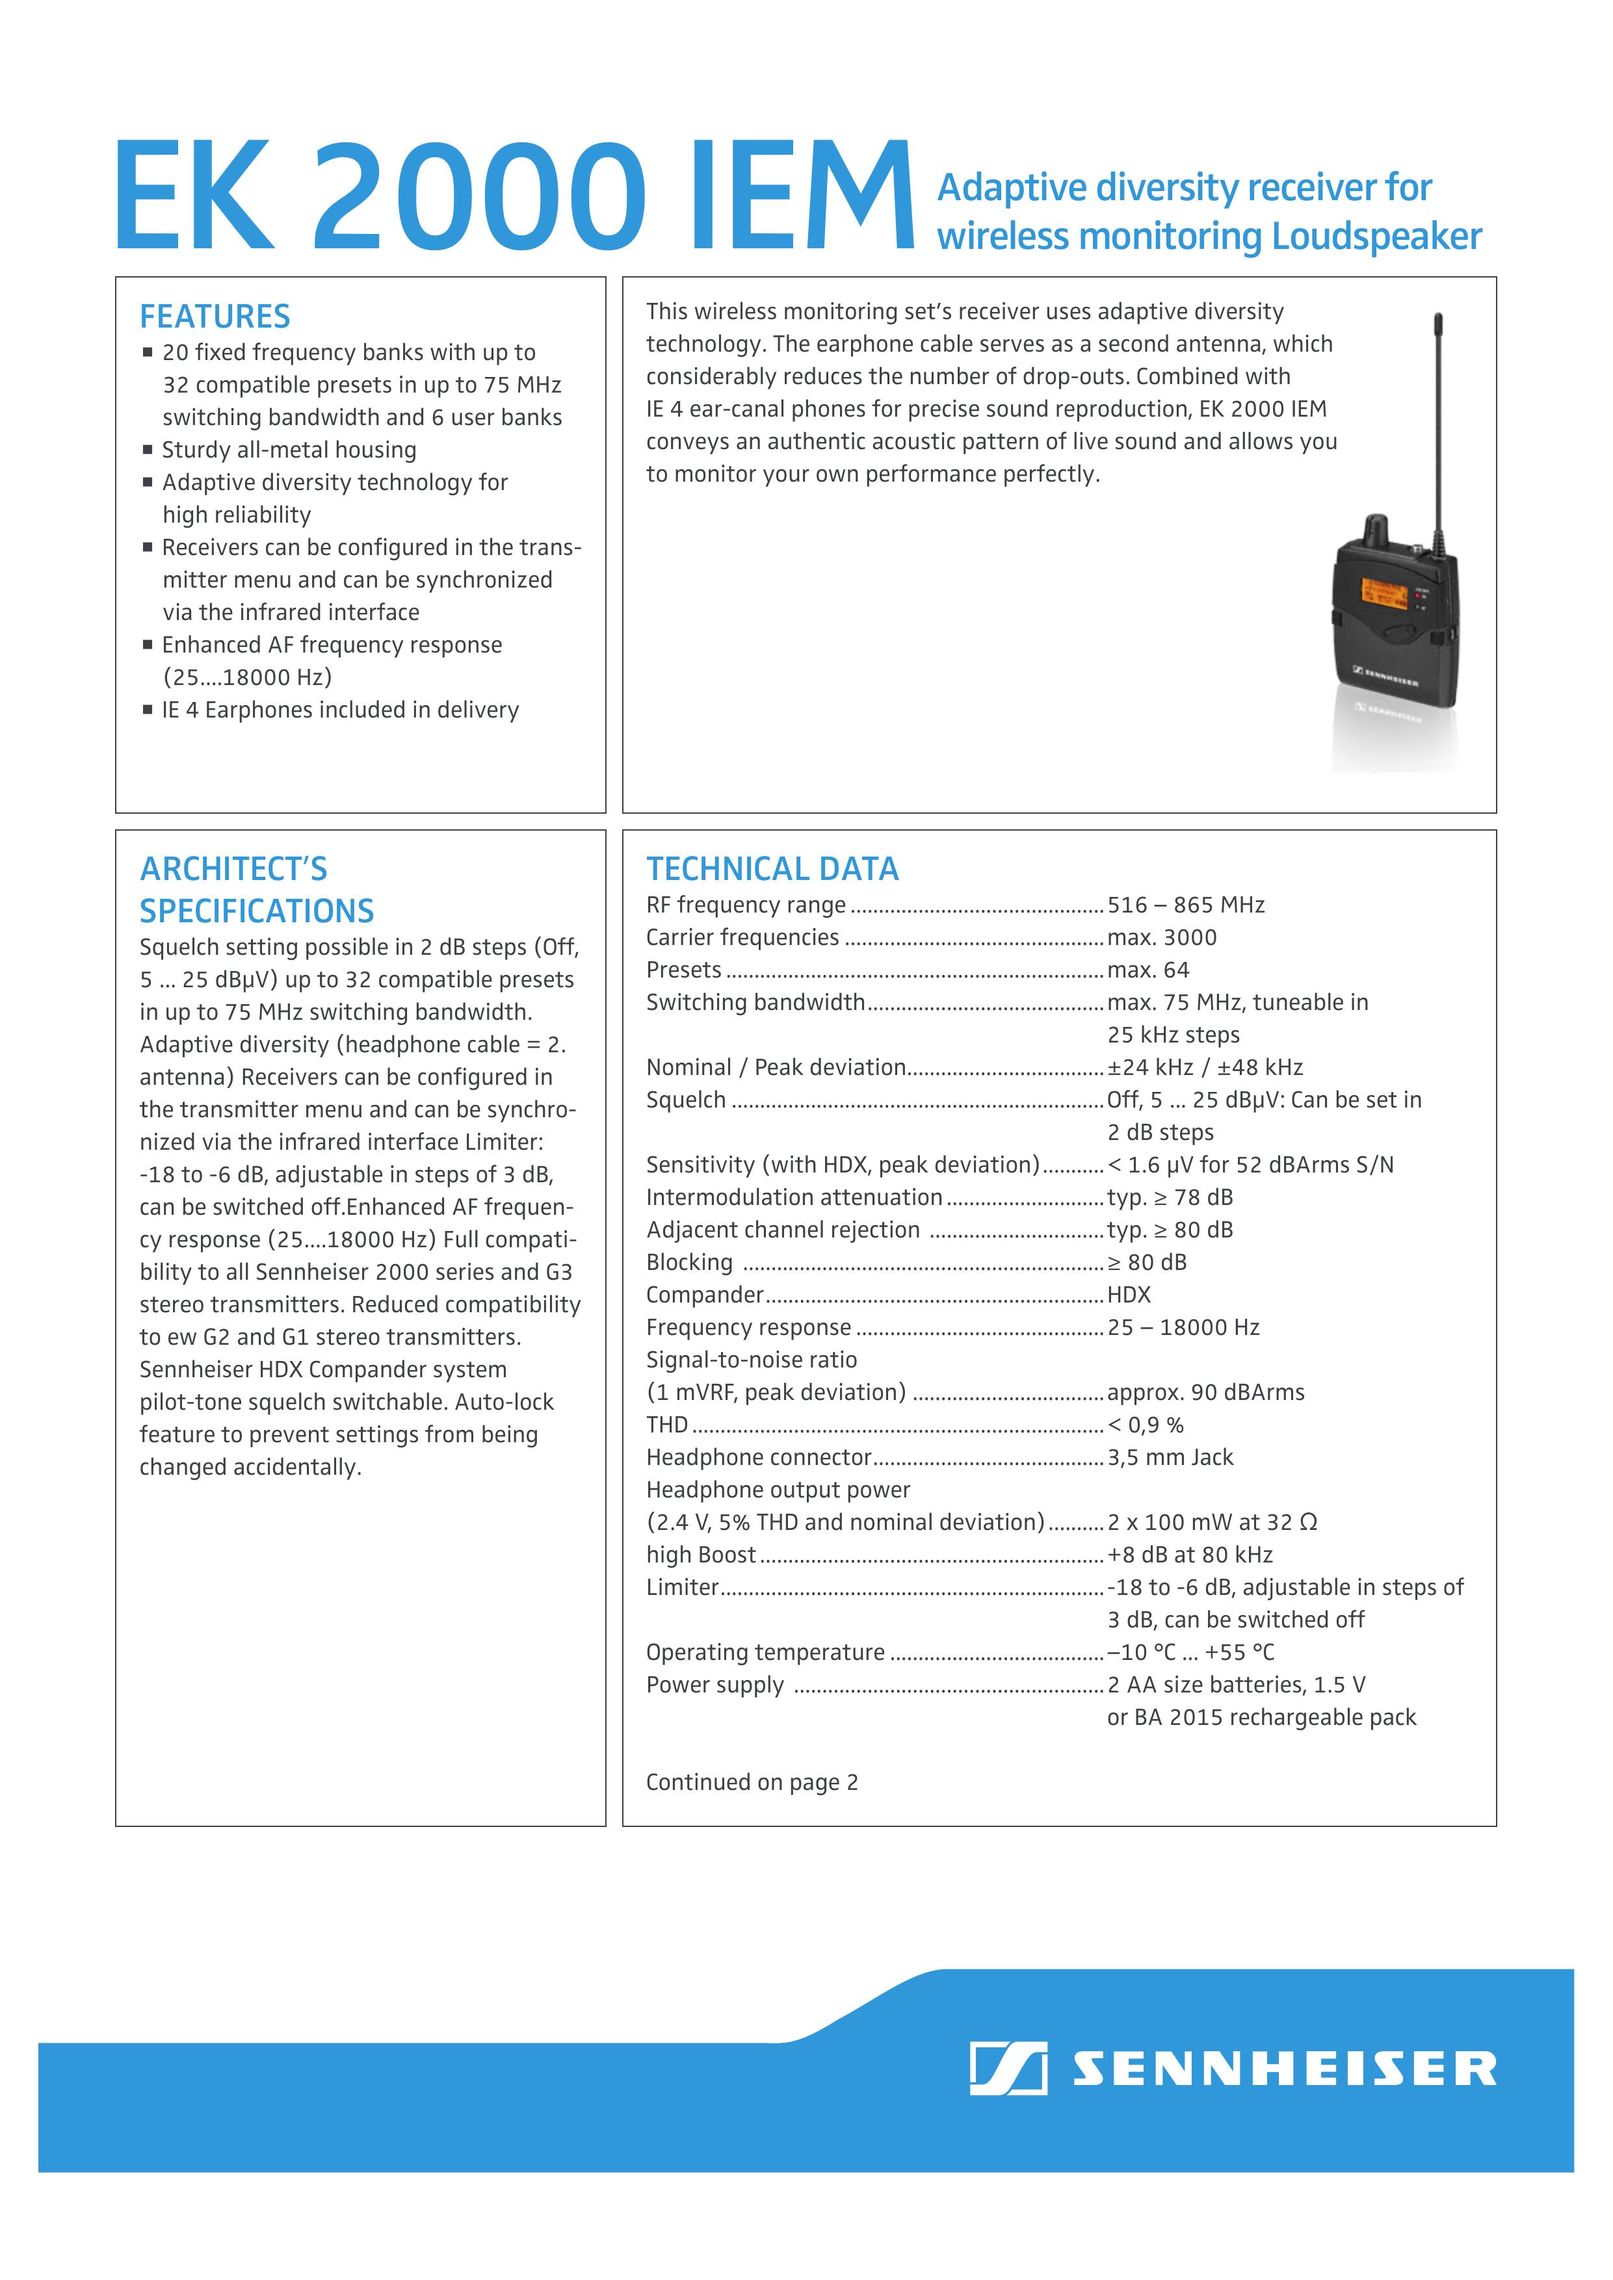 Sennheiser EK 2000 IEM-AW Car Satellite Radio System User Manual